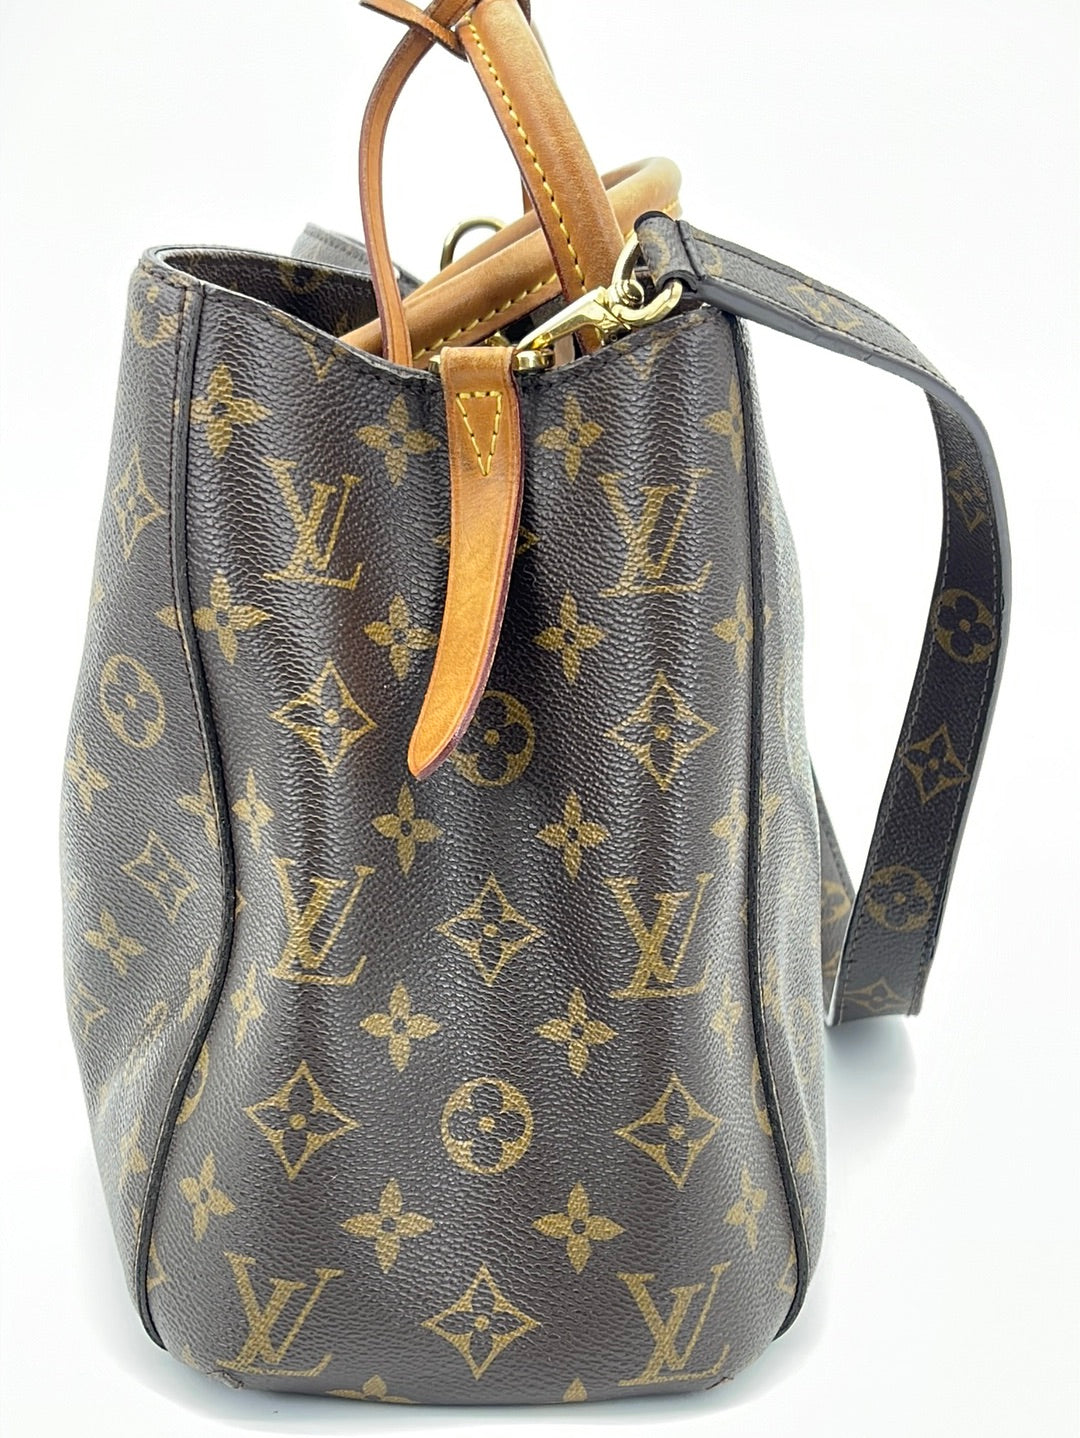 Louis Vuitton Montaigne MM with shoulder strap